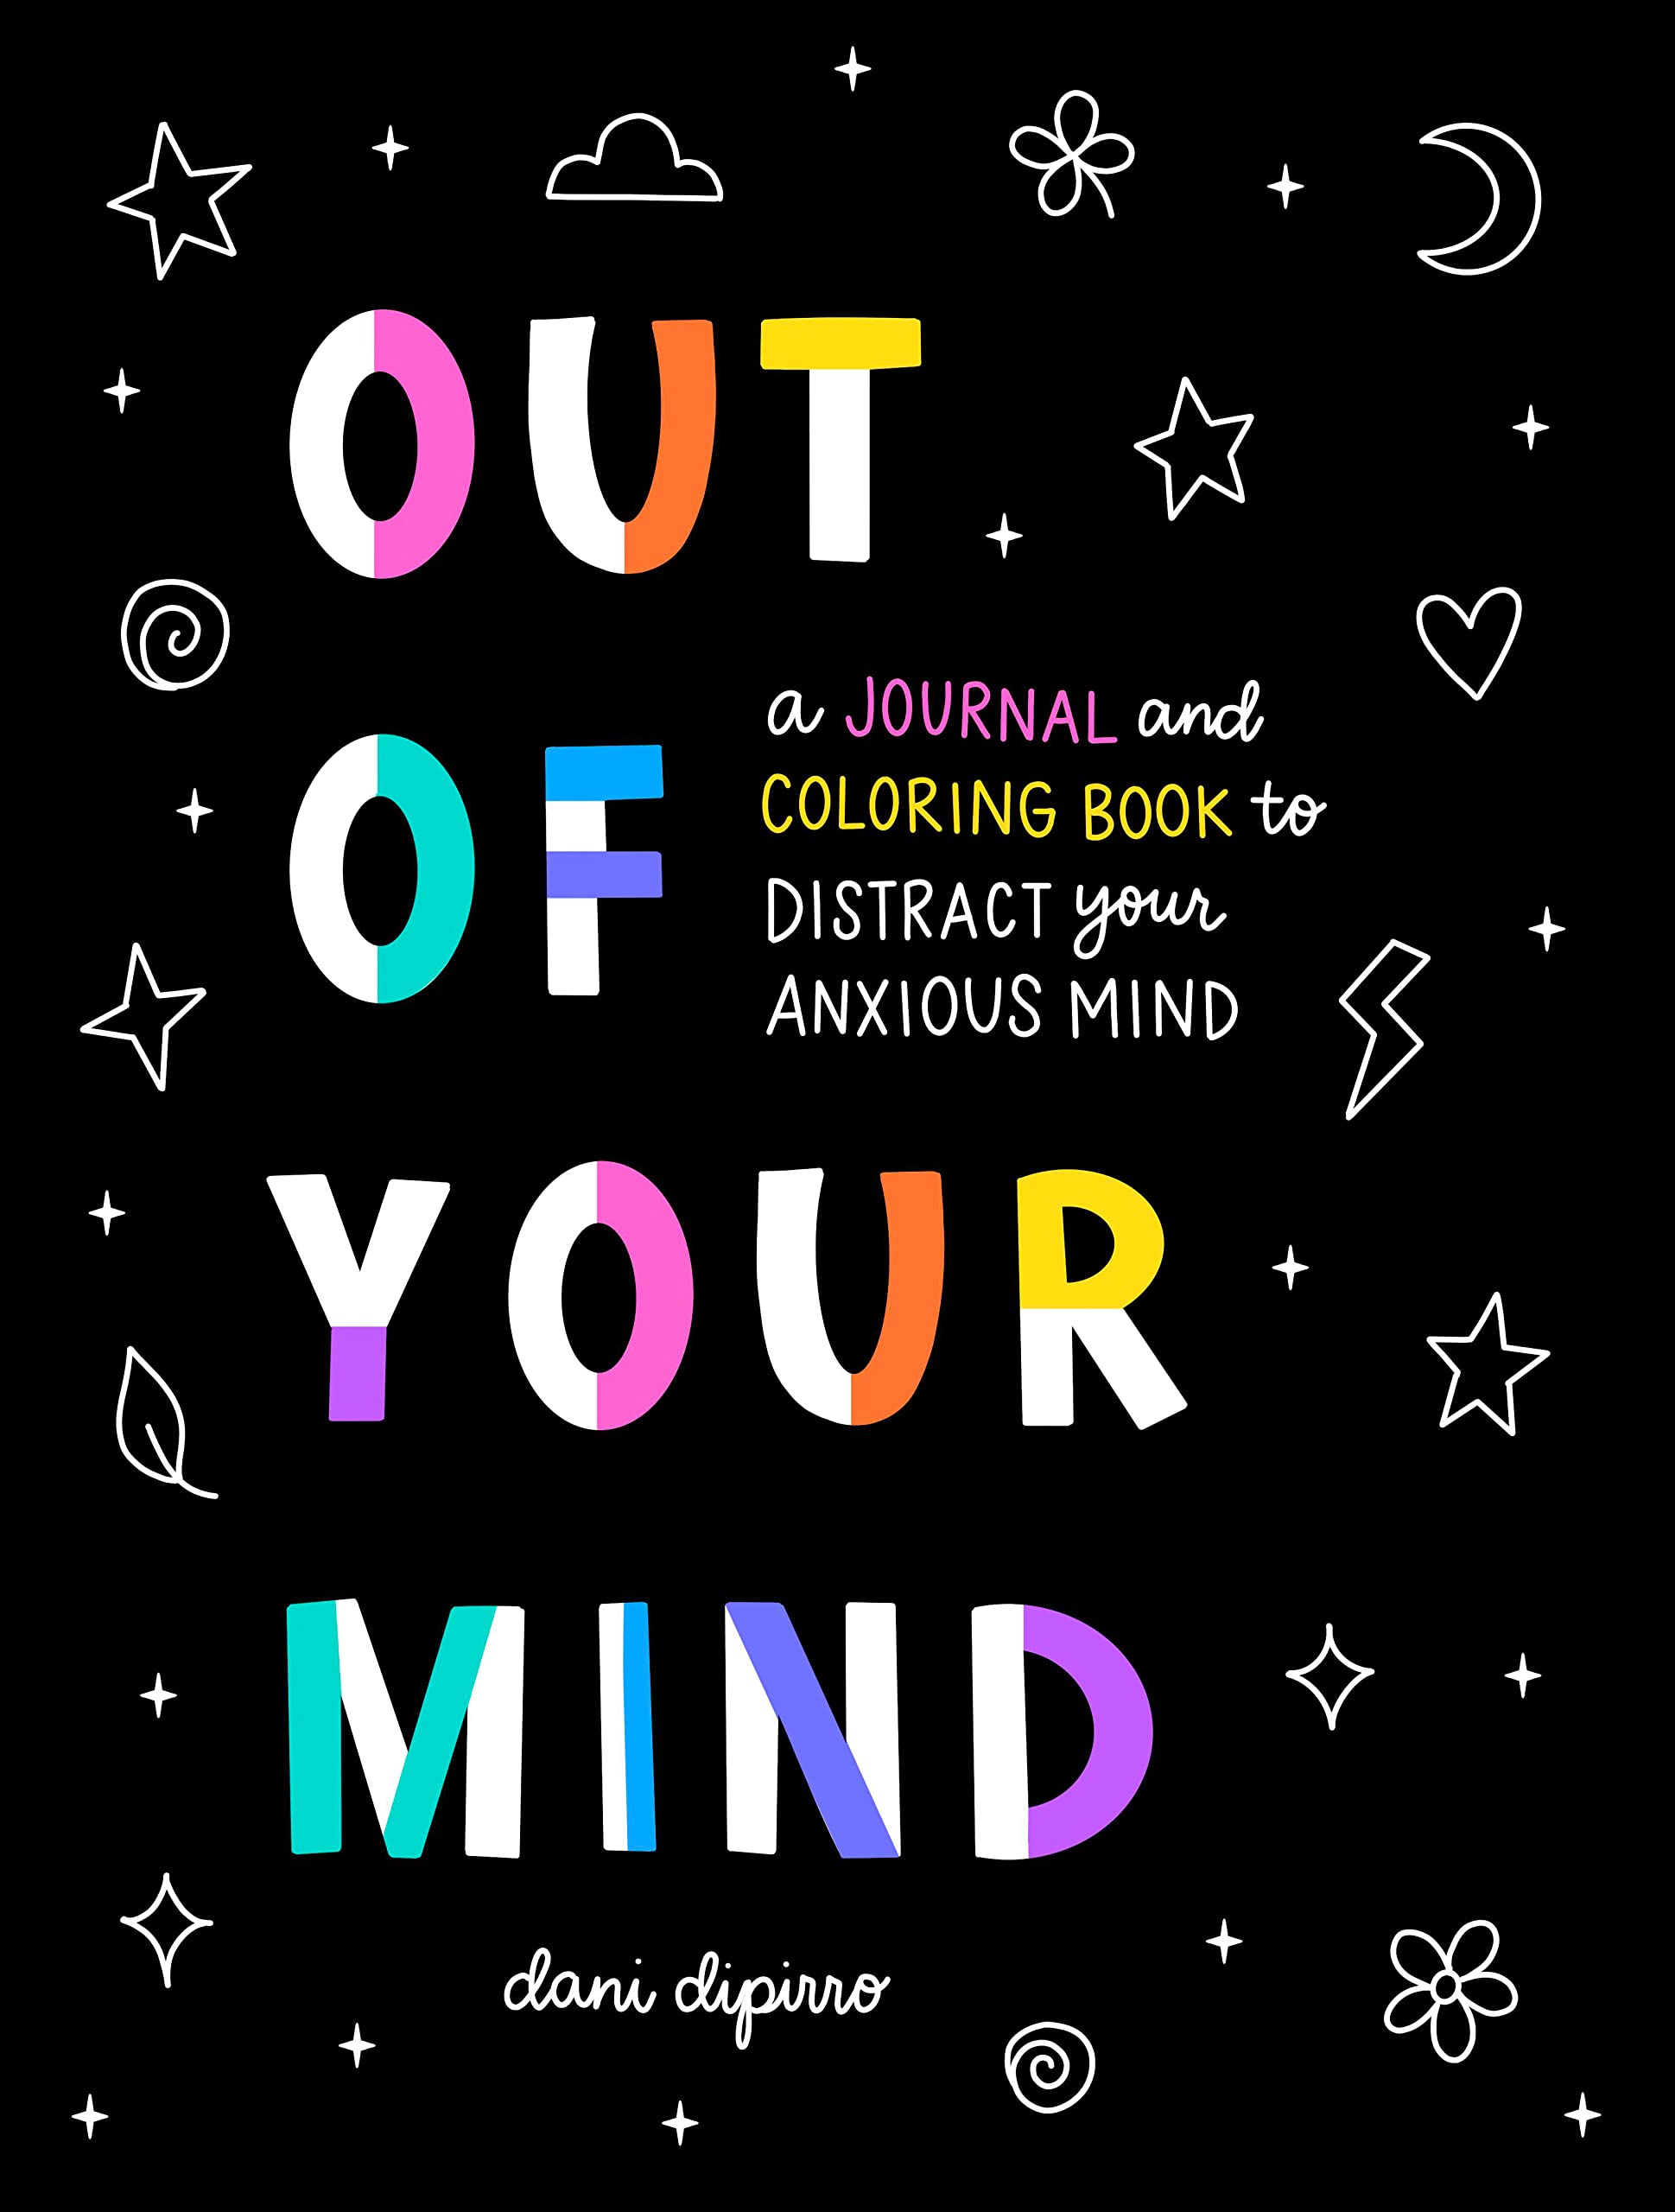 يمكن أيضًا أن تكون كتب التلوين للبالغين عبارة عن مجلات مثل غلاف هذا الكتاب الأسود الذي يحتوي على حروف كبيرة بألوان قوس قزح تقول "خارج عقلك".